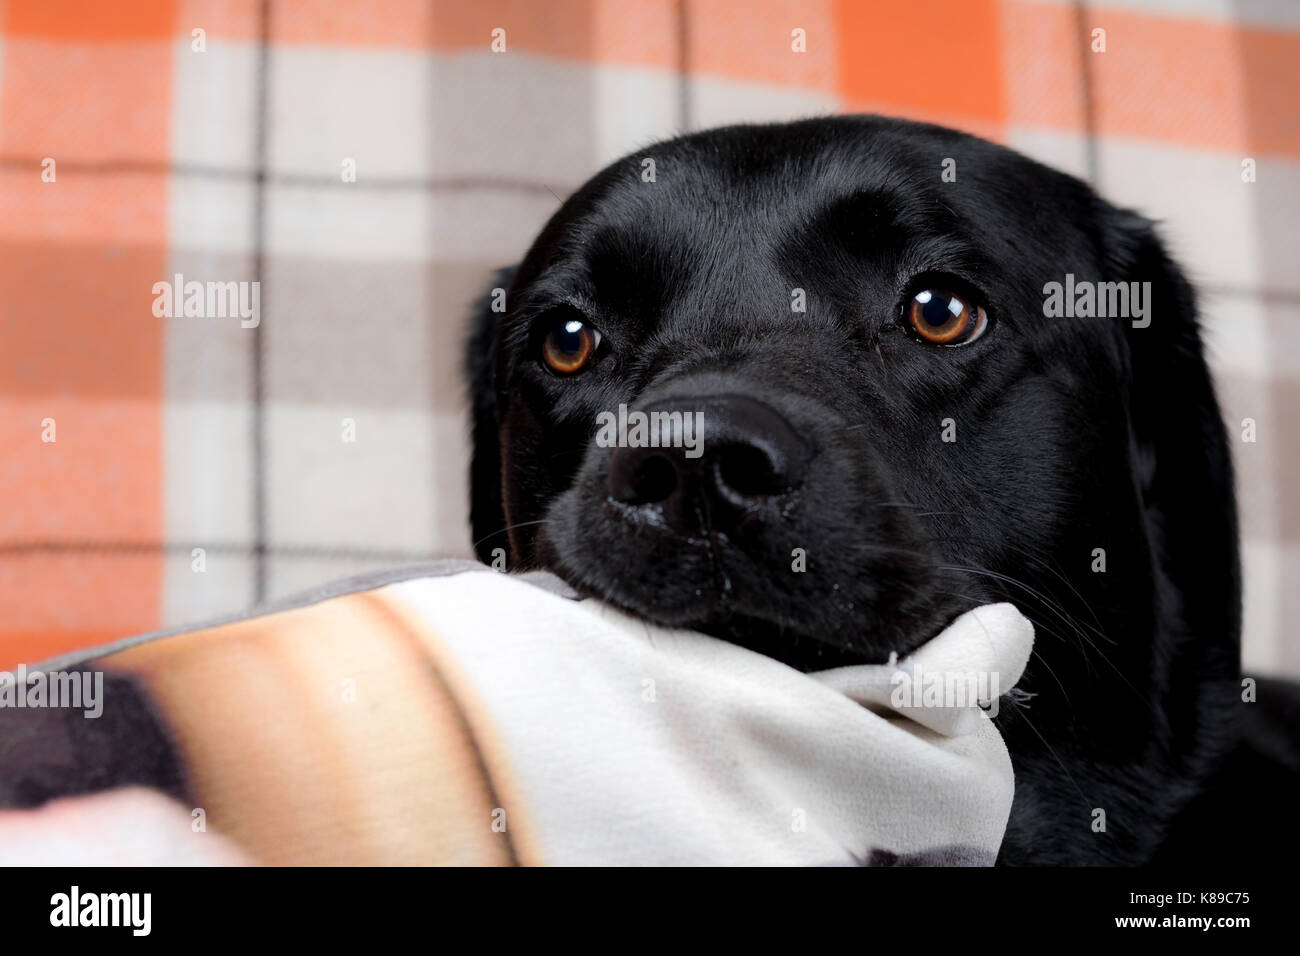 Schwarzer Labrador mit dem Kopf auf einem Kissen - Häuslich schwarzer Labrador Retriever Hund Haustier Stockfoto